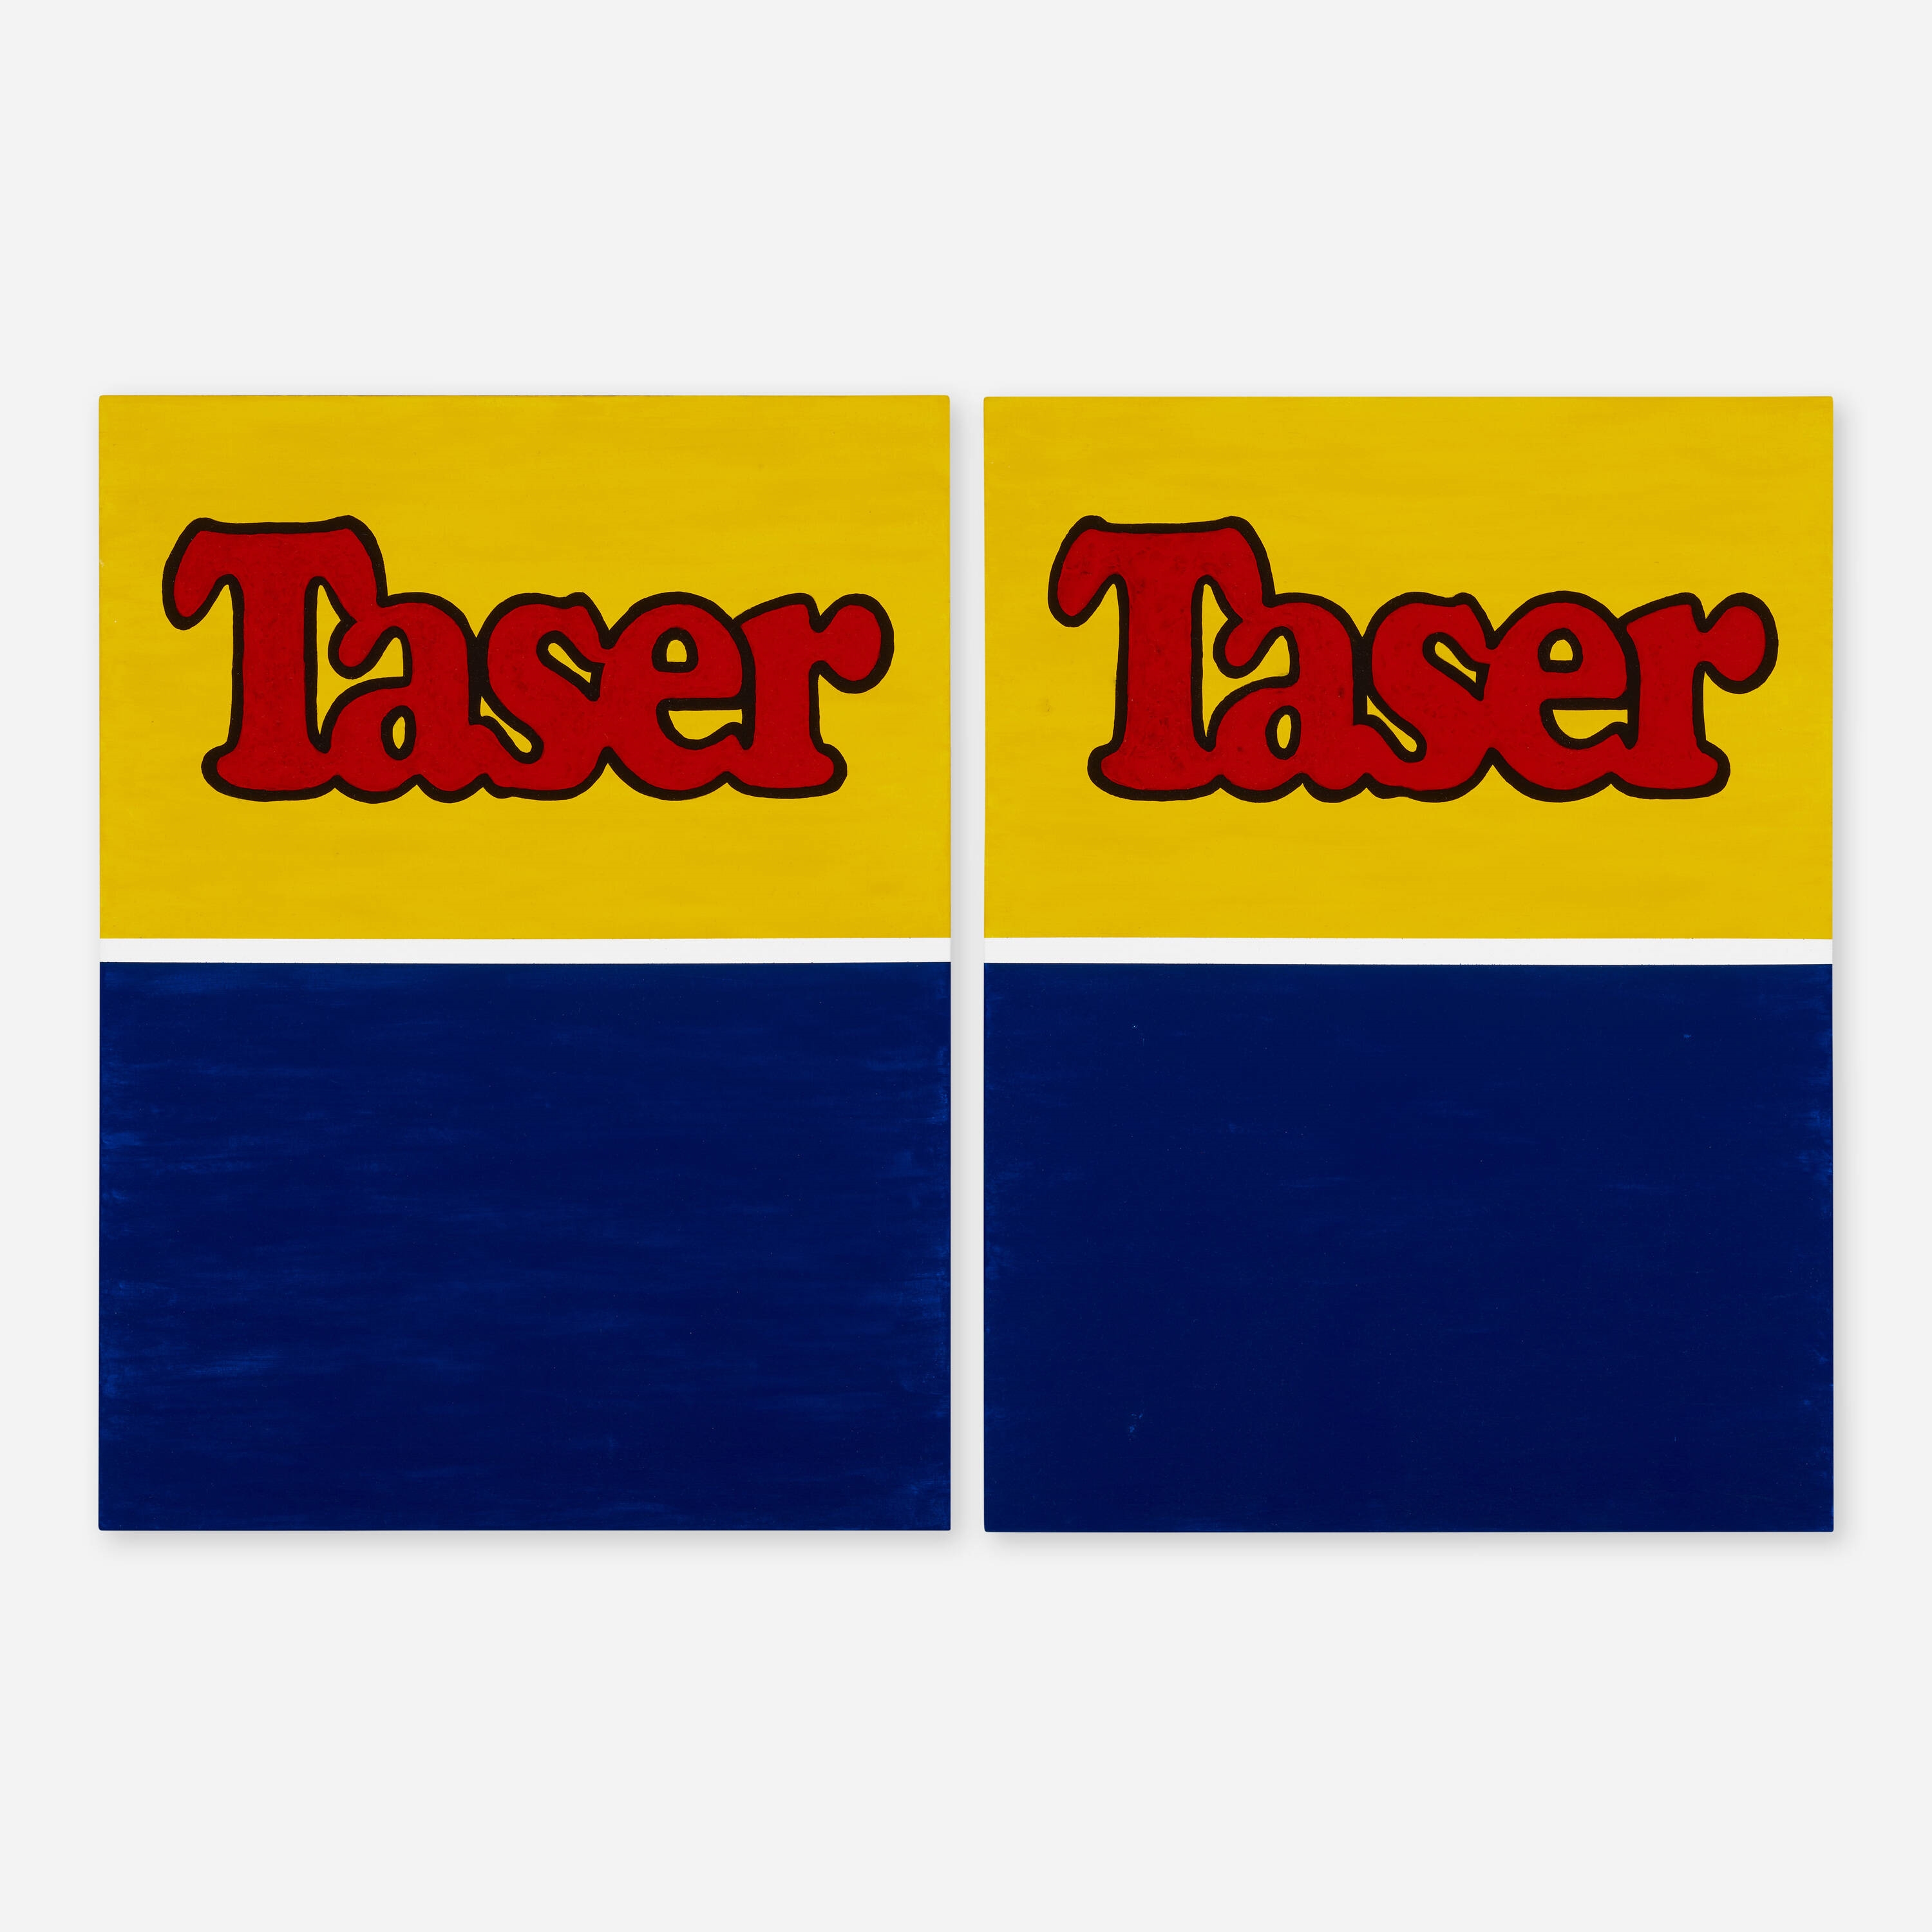 Taser Taser (diptych) by Jason Pickleman, 2022